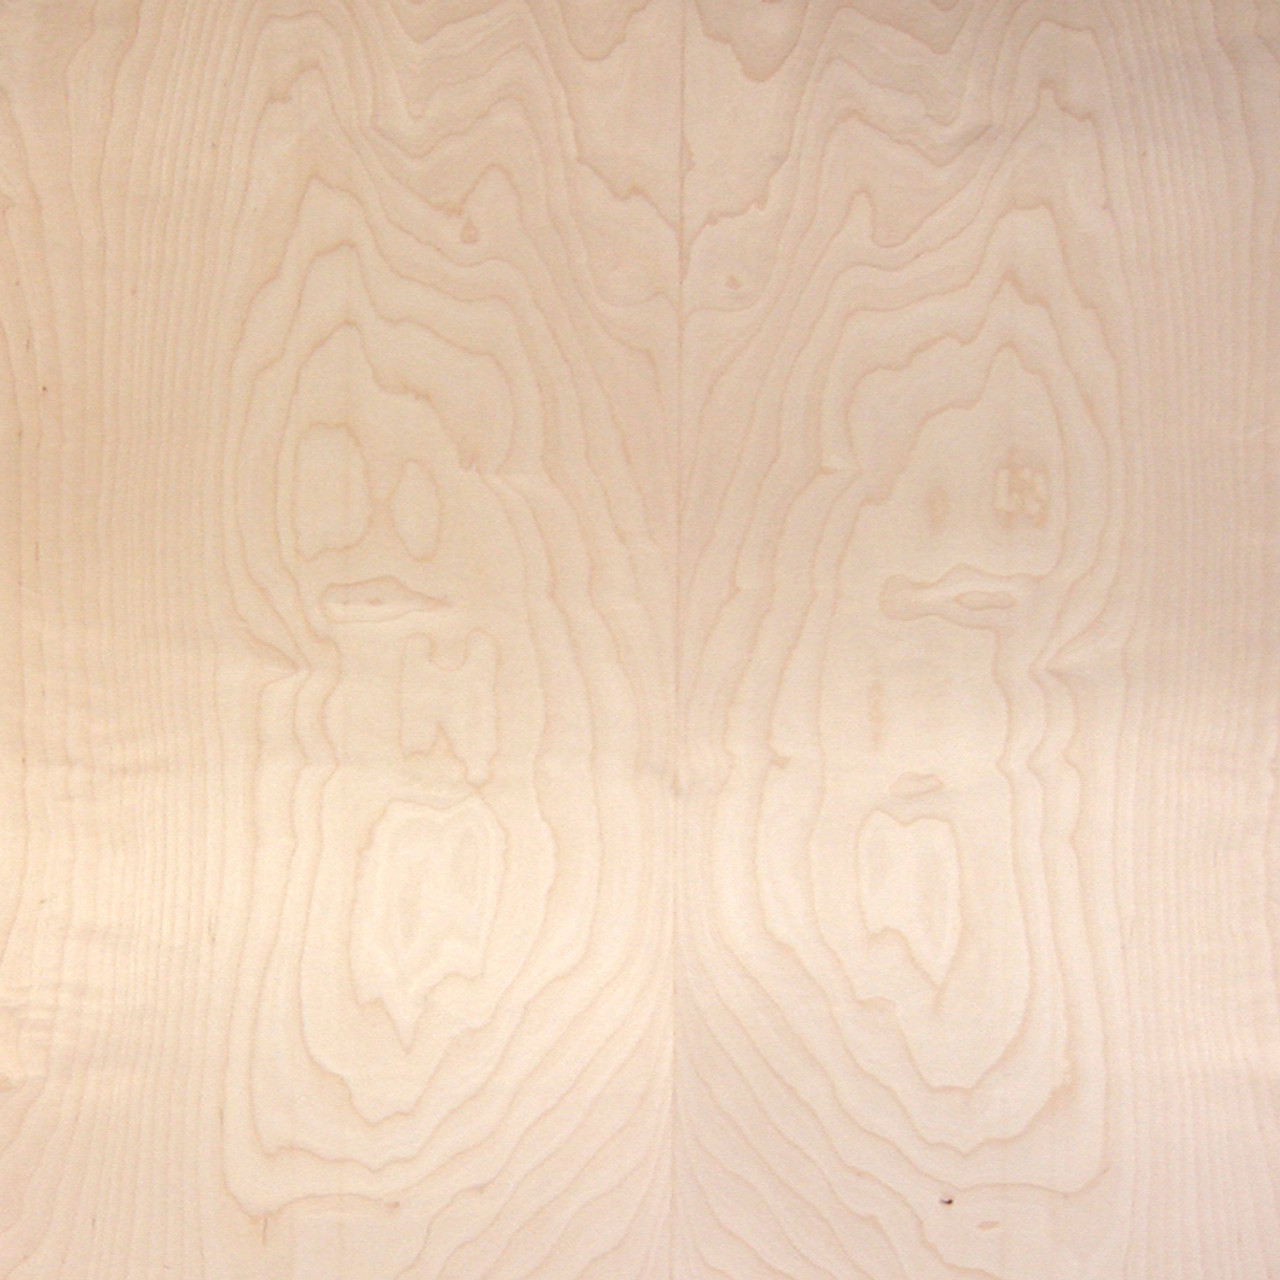 Birch Veneer Baltic White White Birch Wood Veneers Sheets Oakwood Veneer Company